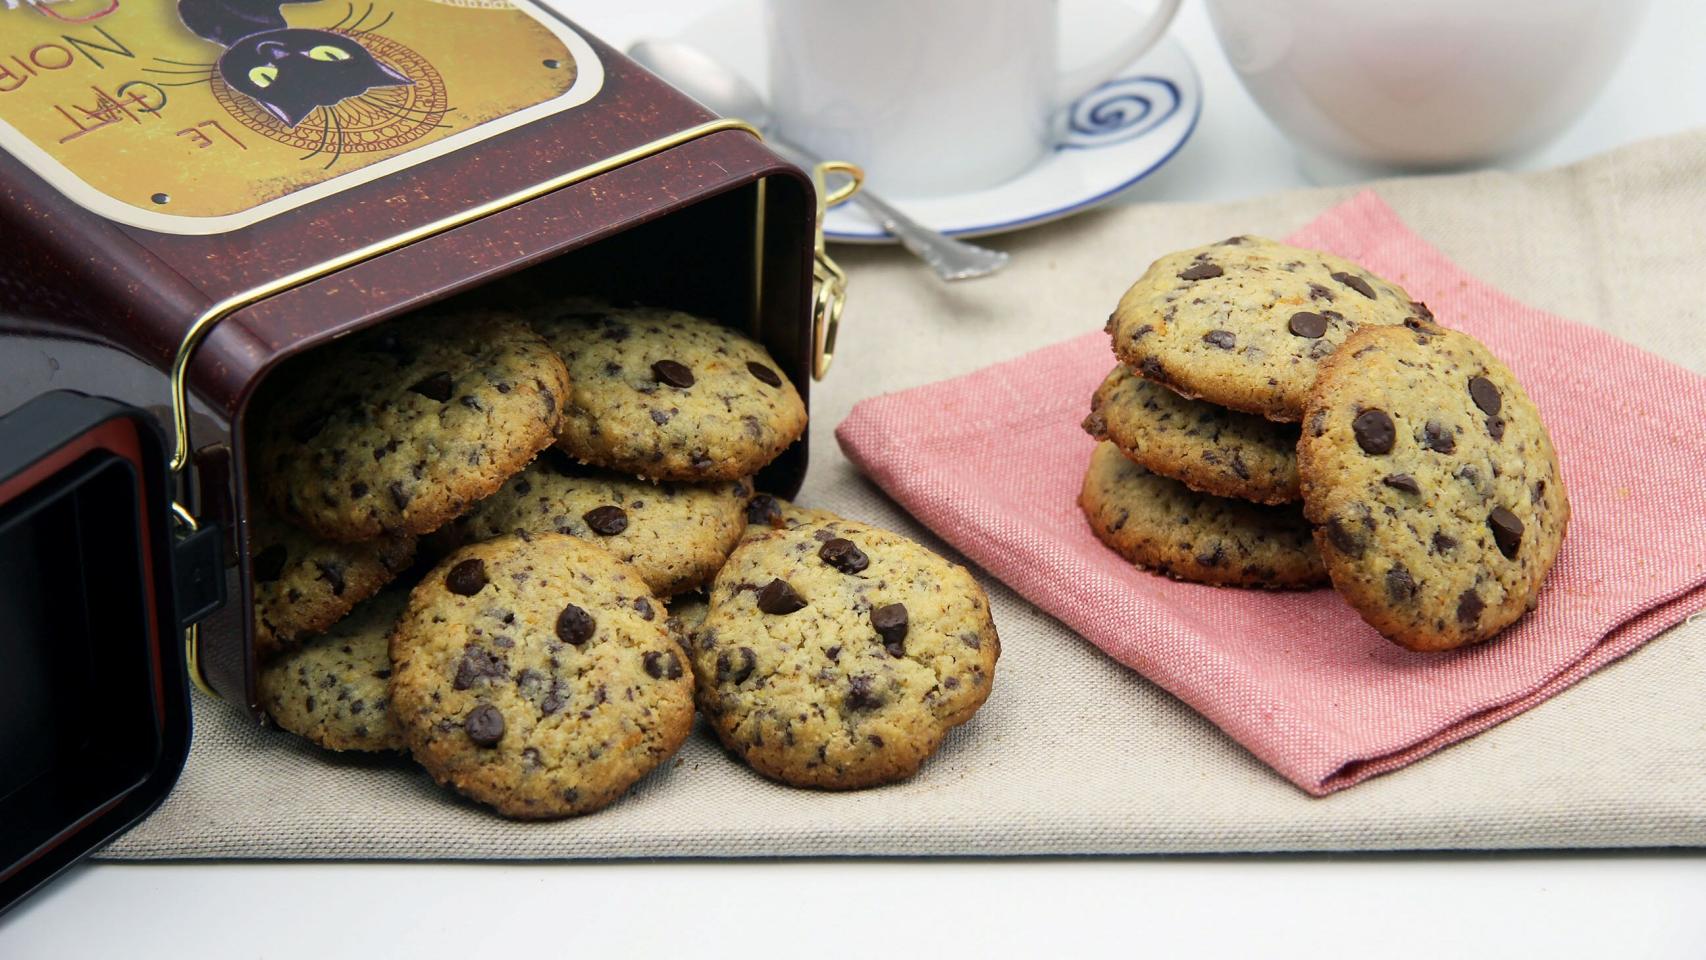 Limo Estadístico Ordenanza del gobierno 9 recetas de galletas fáciles para hornear el fin de semana